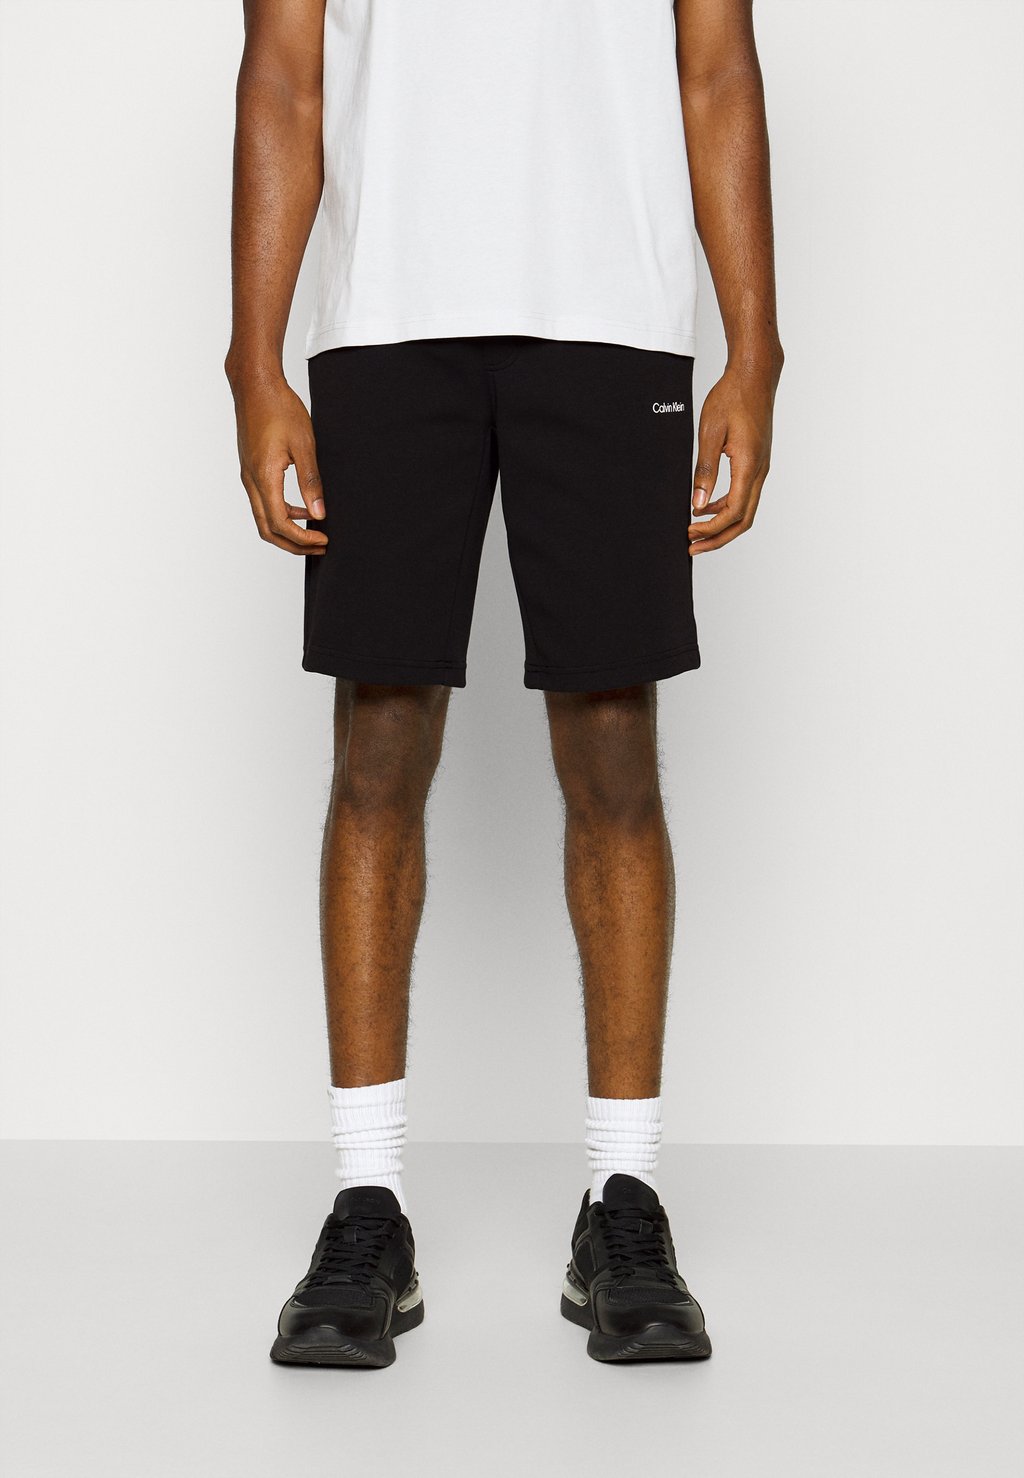 Спортивные штаны MICRO LOGO REPREVE Calvin Klein, черный